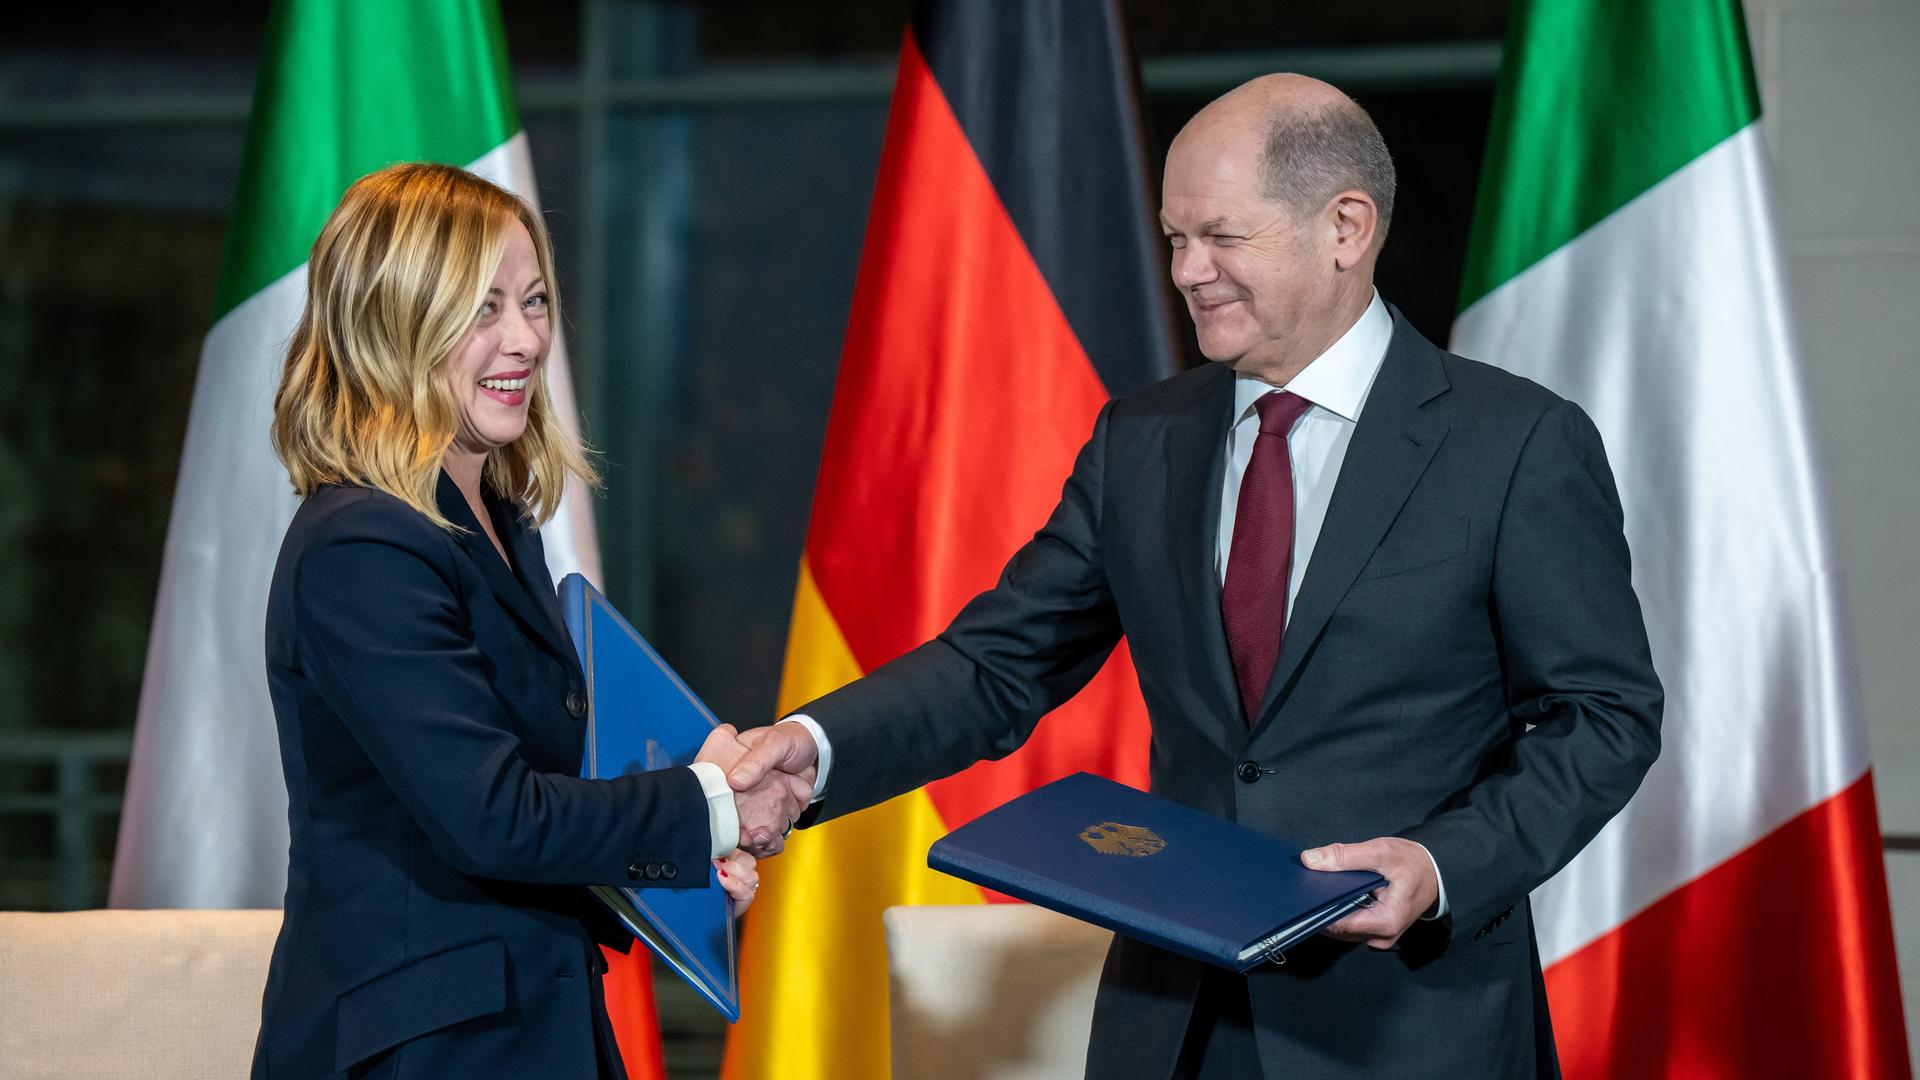 Bundeskanzler Olaf Scholz (SPD) steht neben Giorgia Meloni, Premierministerin von Italien, bei der Unterzeichnung des Aktionsplans zur Zusammenarbeit bei den deutsch-italienischen Regierungskonsultationen im Kanzleramt.